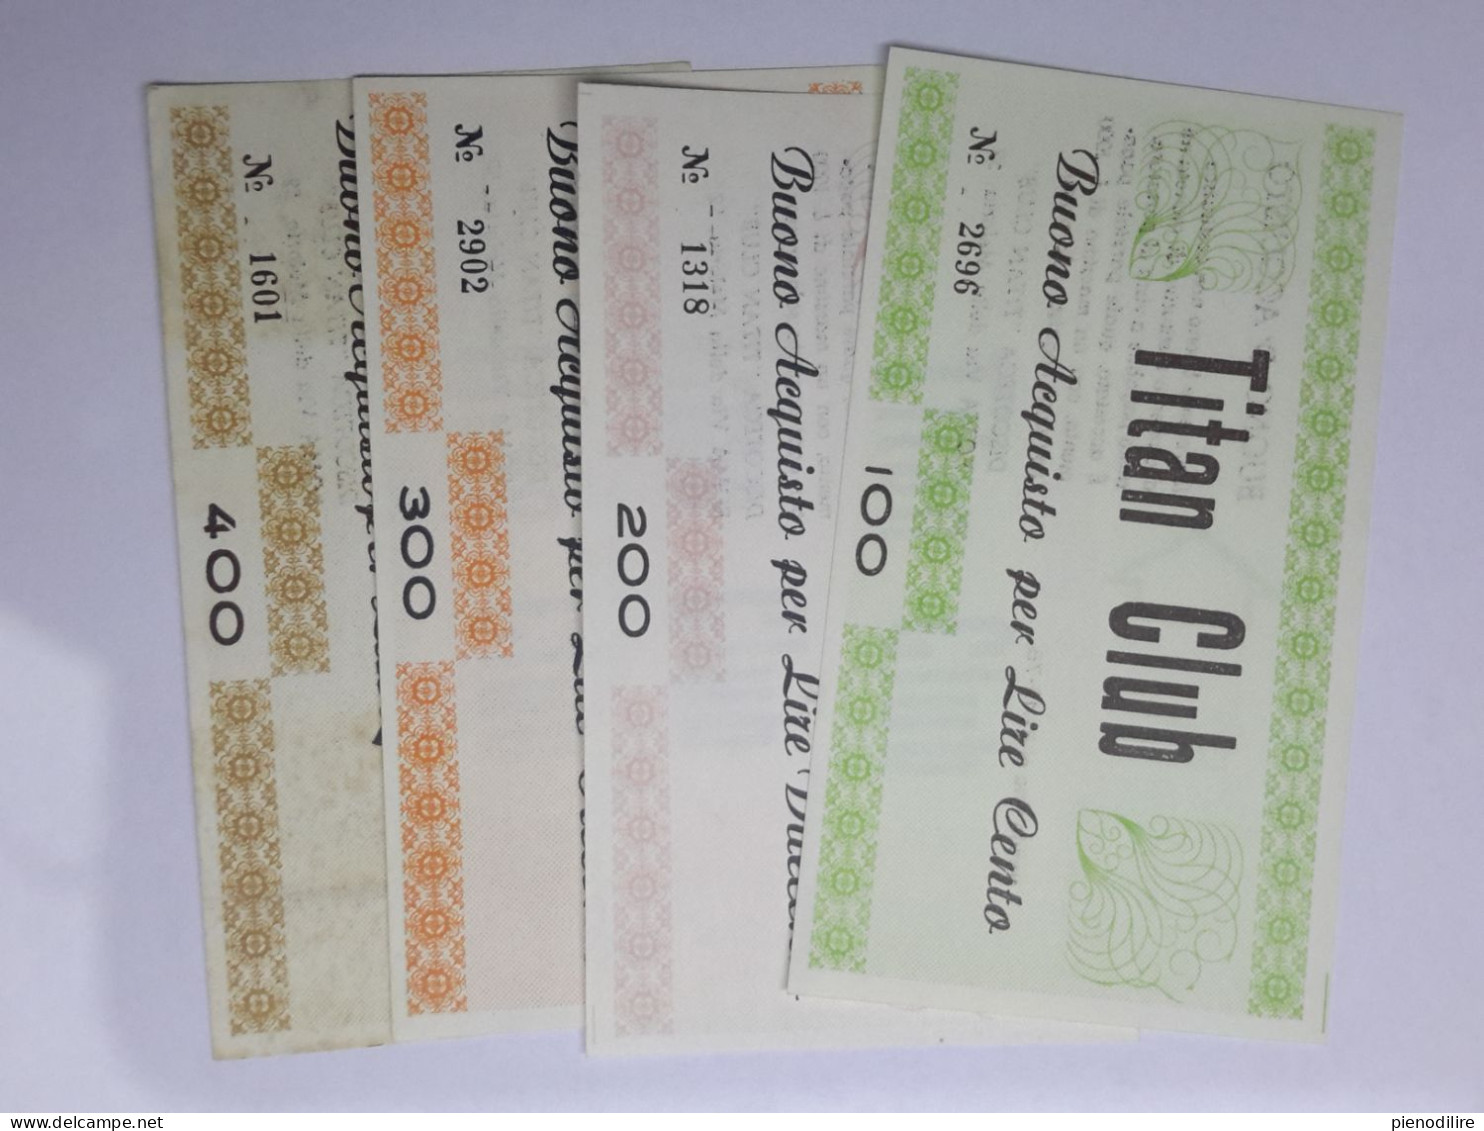 LOTTO 4Pz. 100 200 300 400 LIRE BUONI ACQUISTO TITAN CLUB VALIDO FINO AL 31.12.1976 (A.3) - [10] Cheques En Mini-cheques